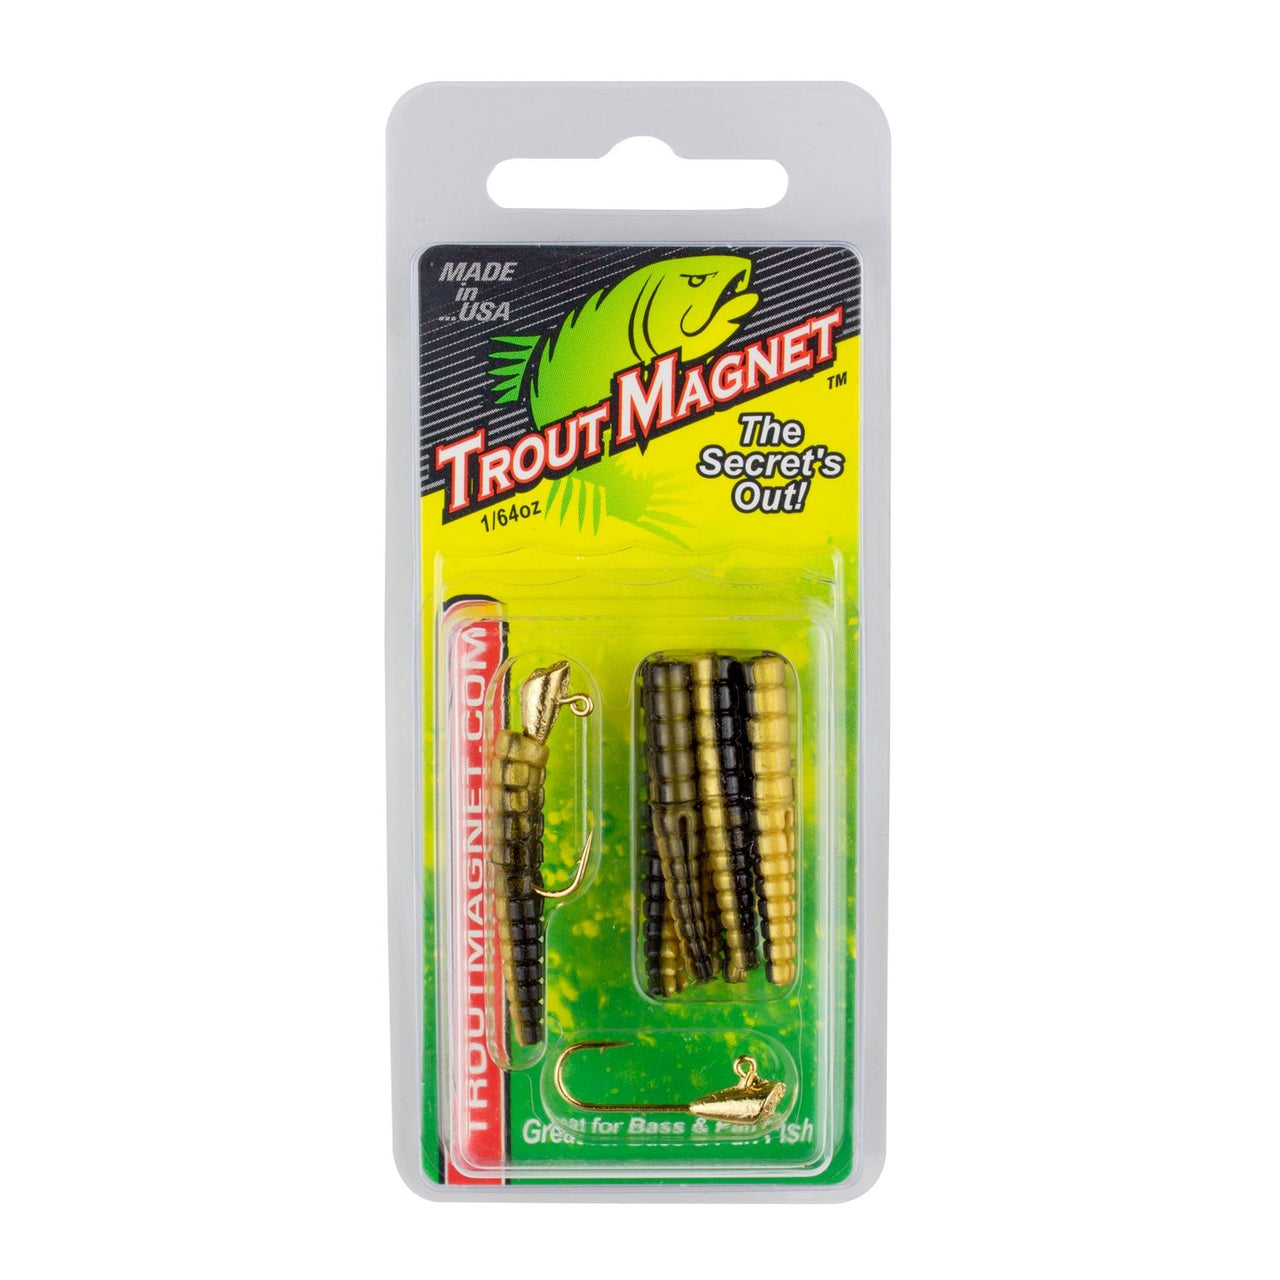 Trout Magnet 82-piece TNT Kit